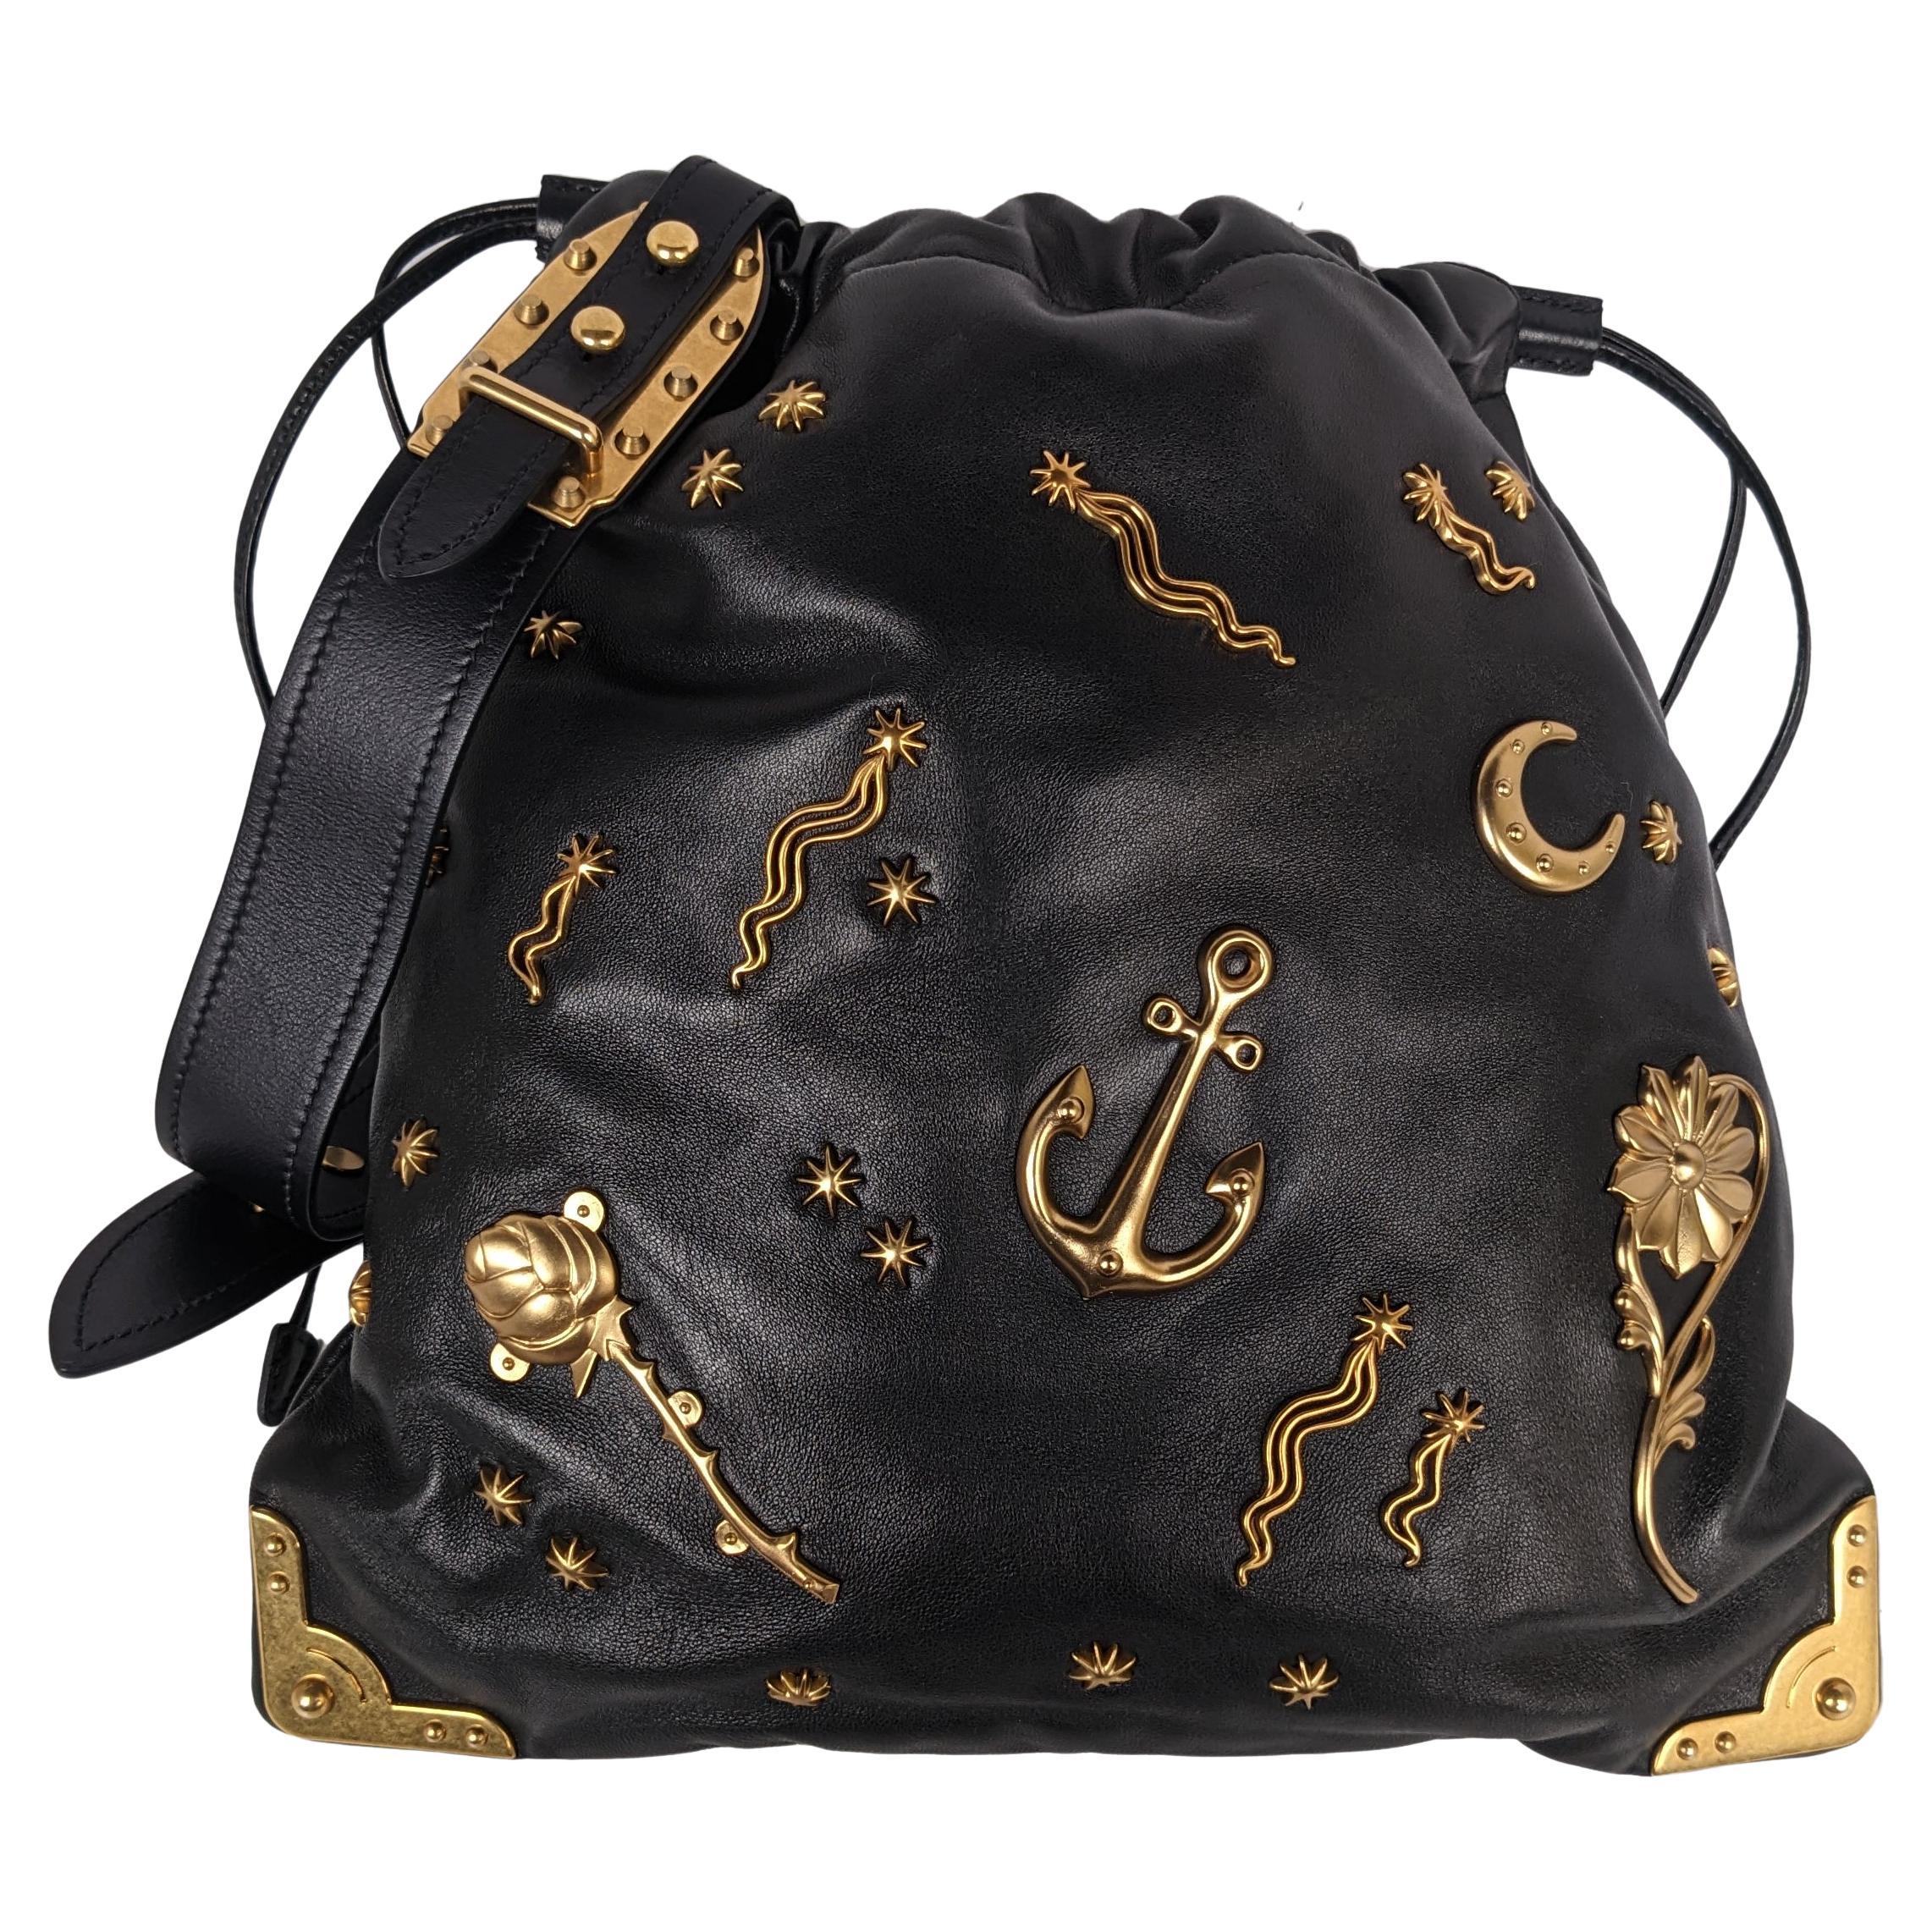 Prada Astrology - For Sale on 1stDibs | prada astrology bag, prada cahier  astrology, prada cahier astrology bag